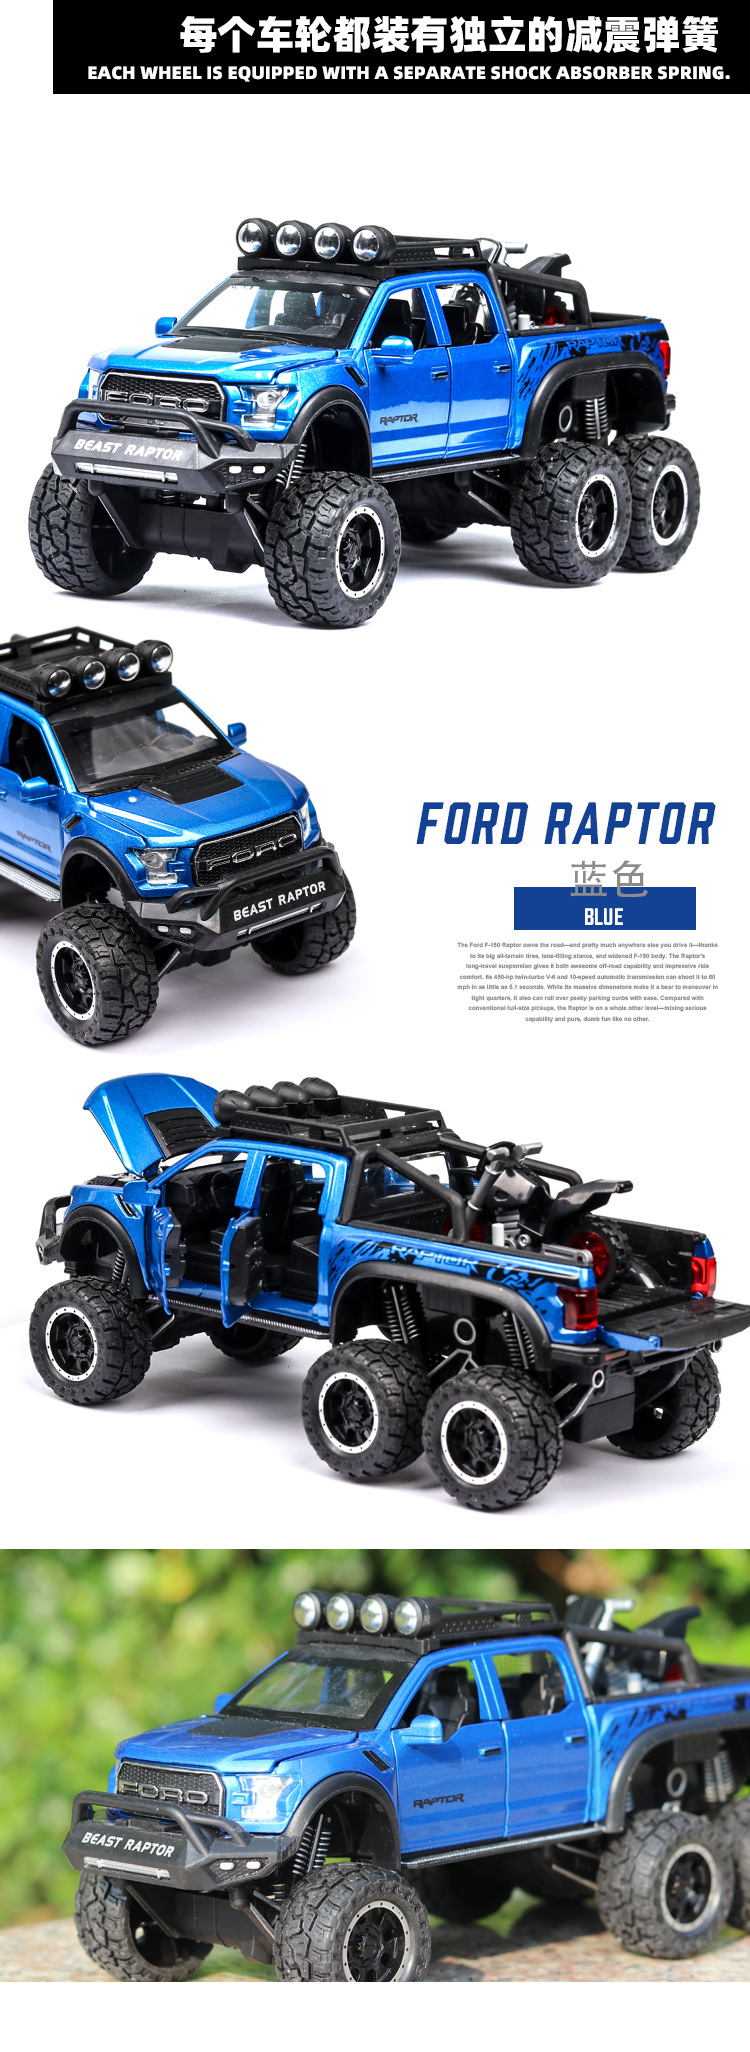 Xe mô hình Ford Raptor off-road bán tải F150 tỉ lệ 1:24 - ảnh 14